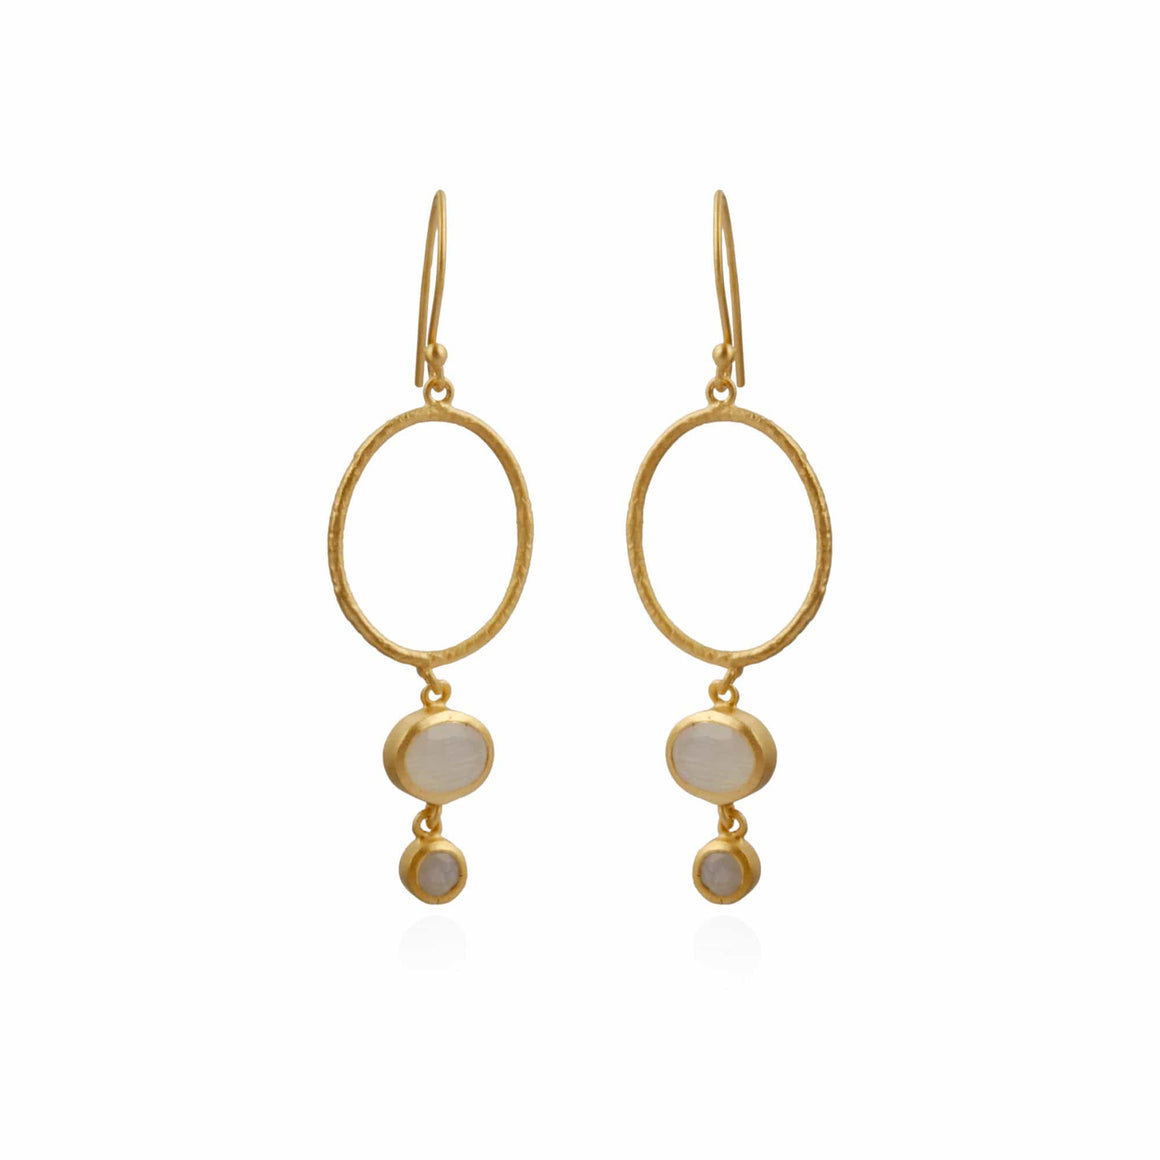 Manjusha Jewels earrings Drop Earrings in Rainbow Moonstone